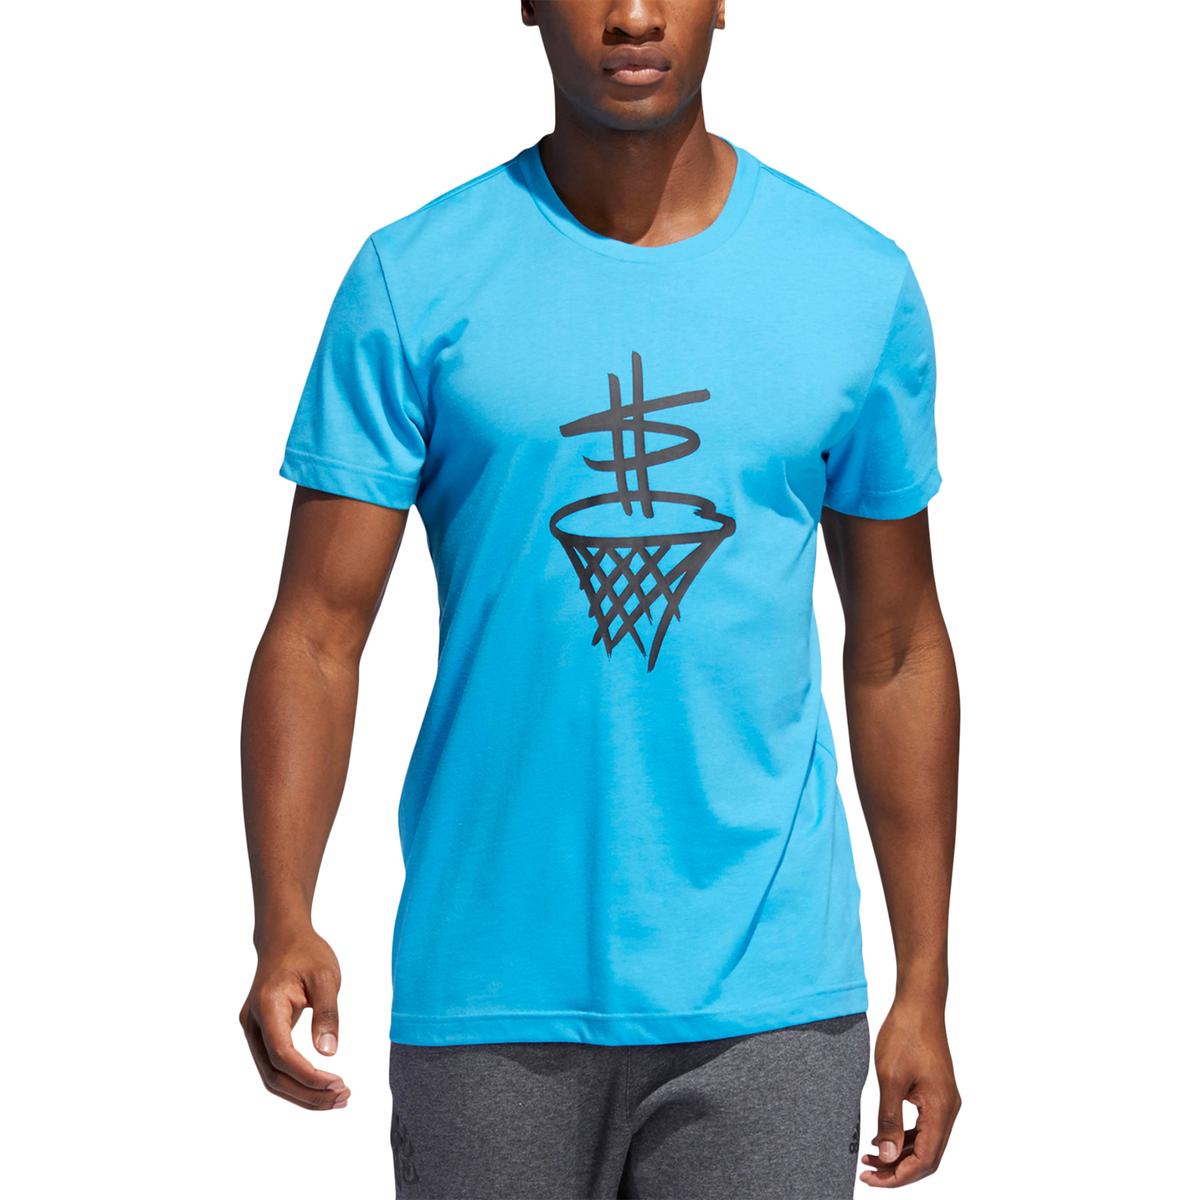 Adidas Mens Blue Fitness Workout Running T-Shirt 2XL BHFO 8855 | eBay